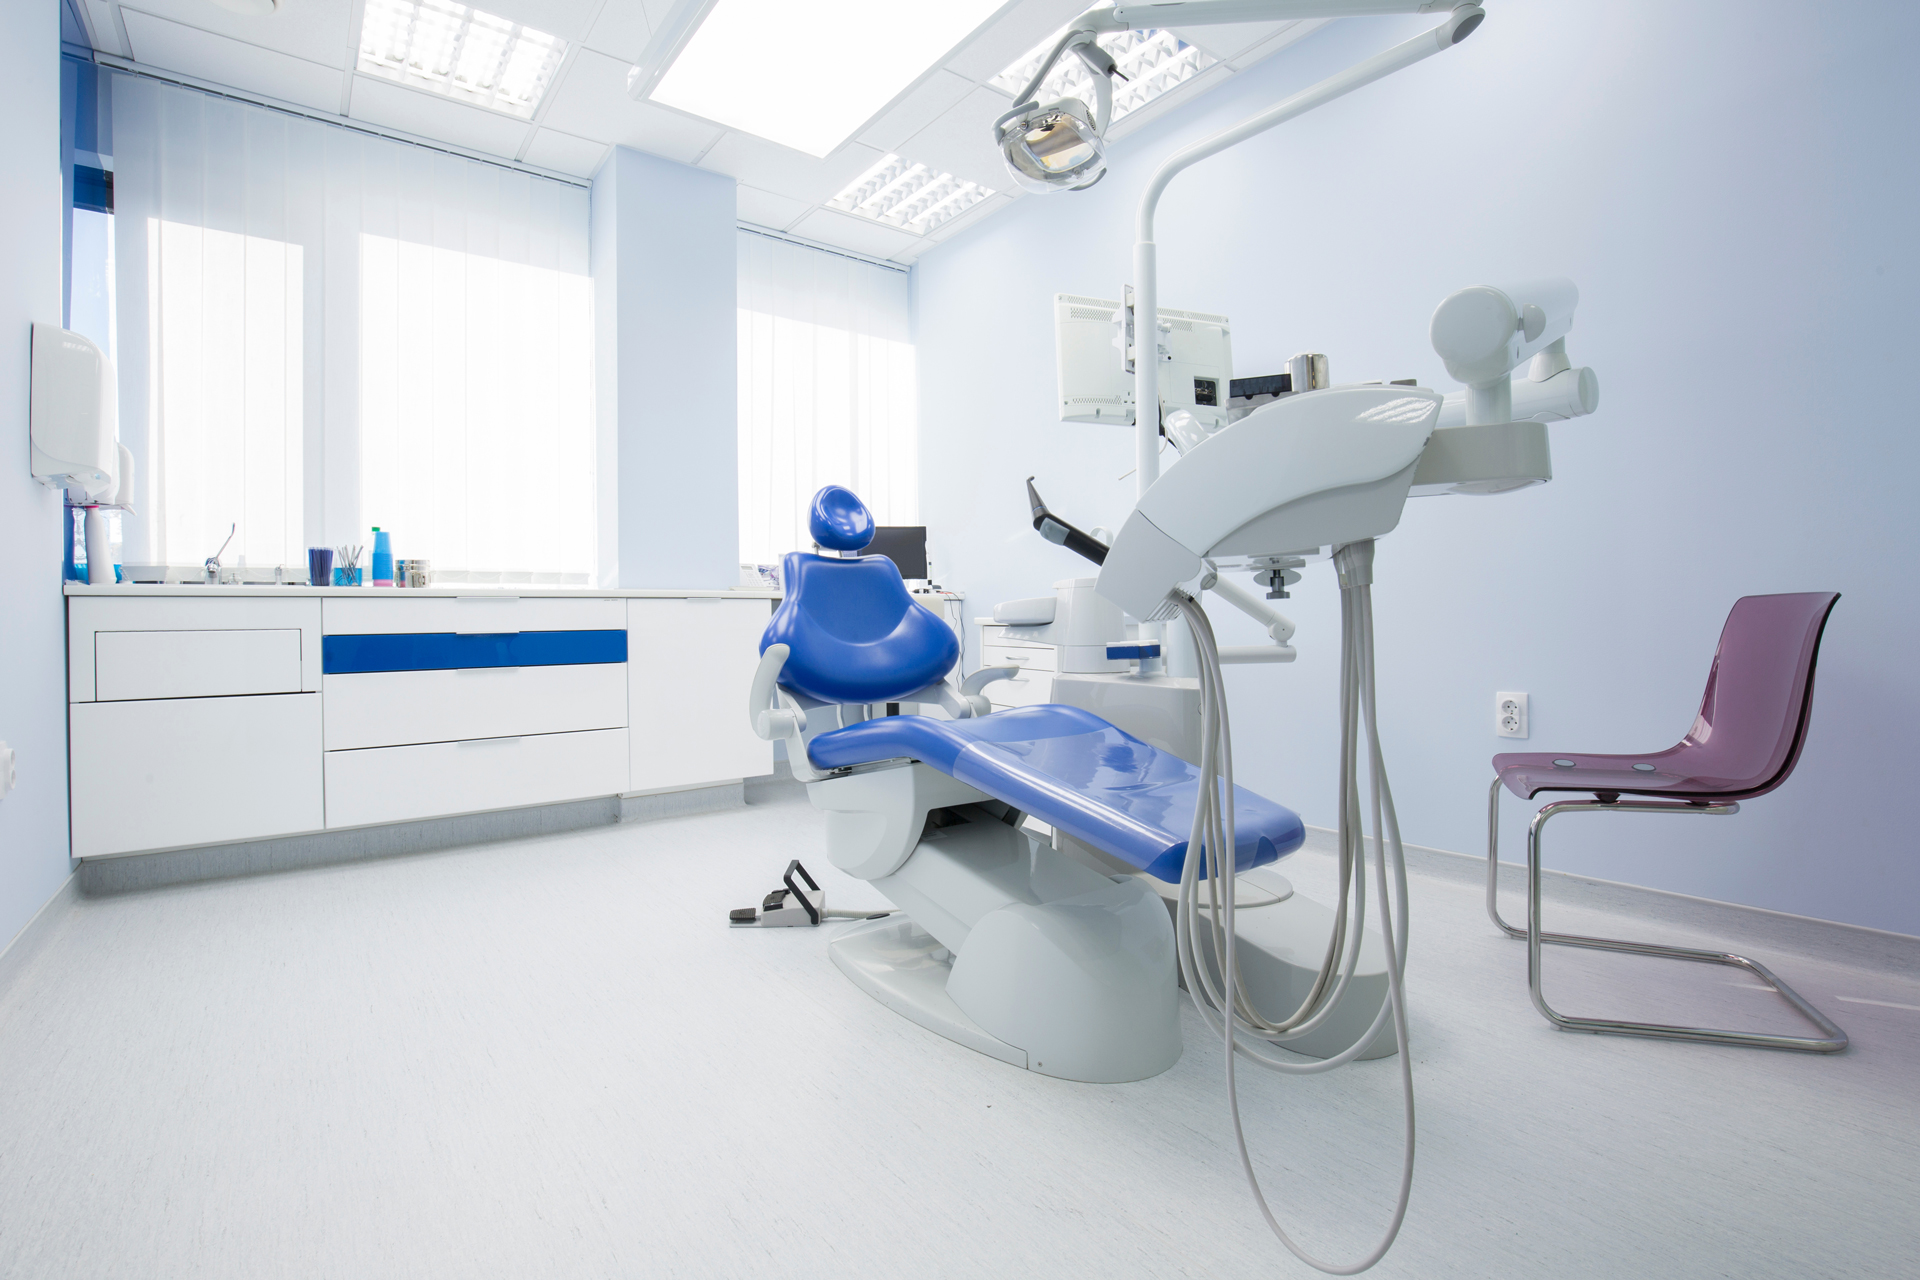 Zahnarztstuhl in Praxis - Rundum-Service für Dentaleinheiten, wie Siemens Sirona M1 oder KaVo 1058 bei rundum.dental.